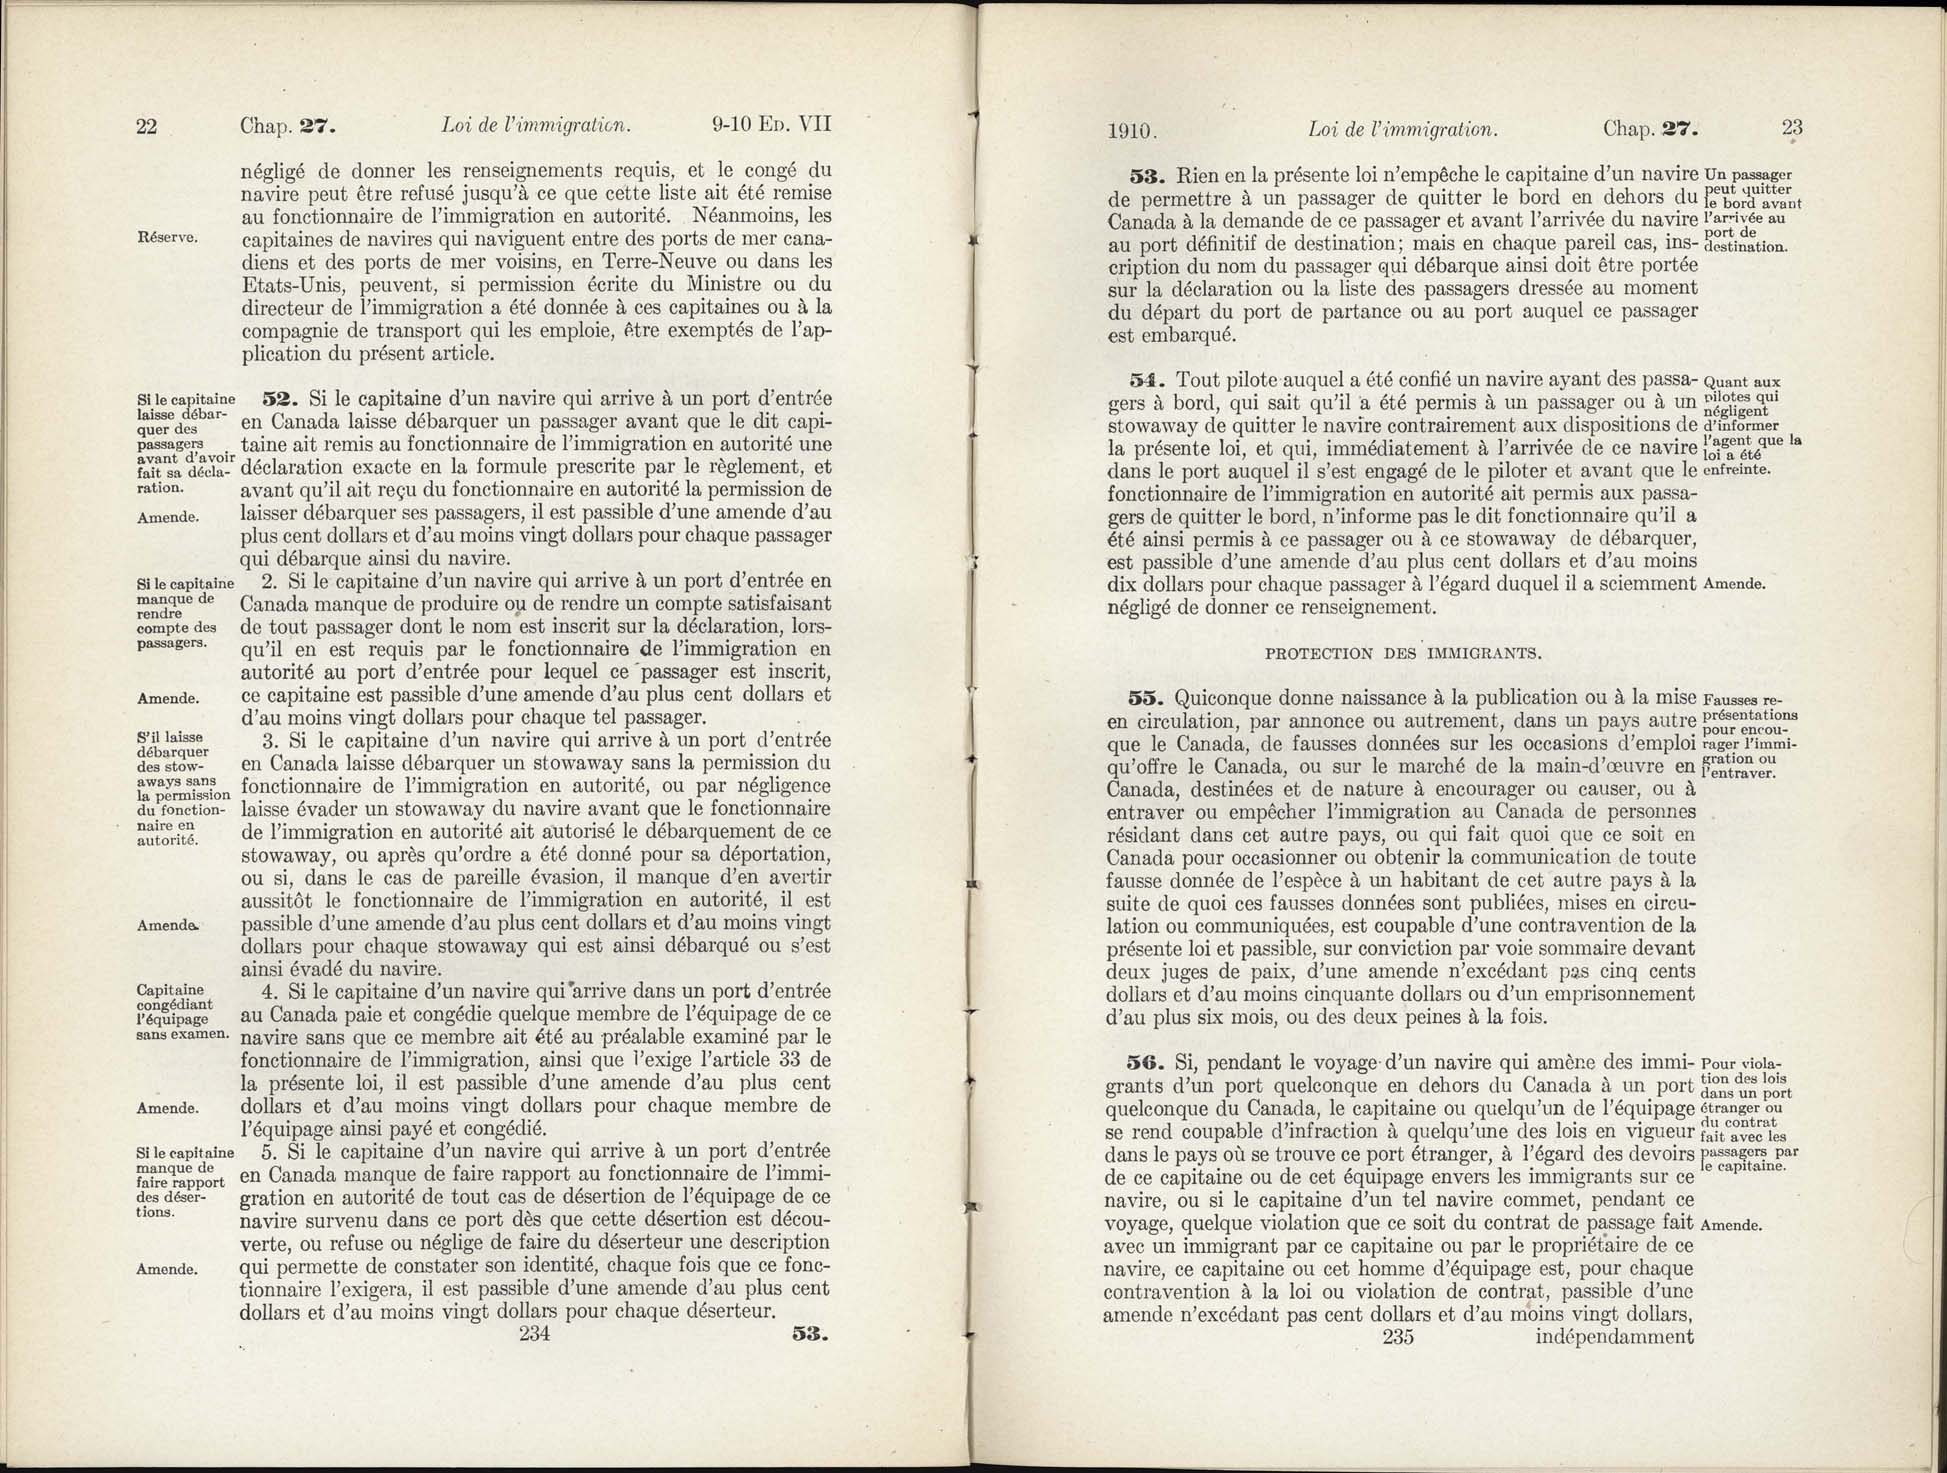 Chap 27 Page 234, 235 L’Acte d’immigration, 1910